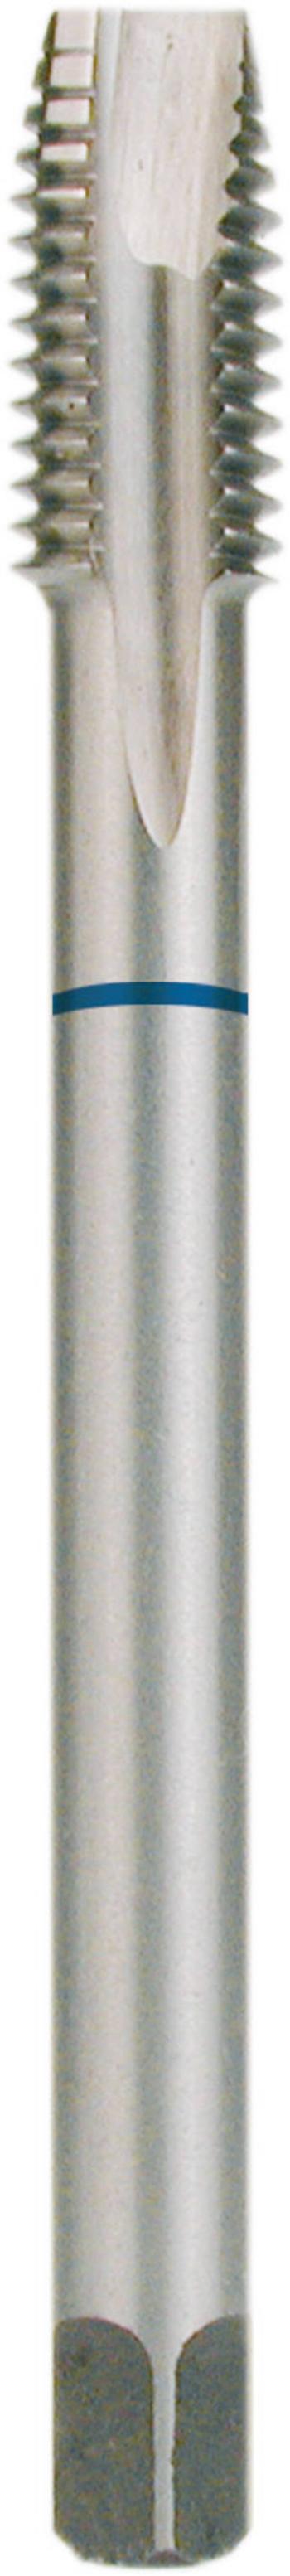 RUKO 232120 strojný závitník 1 ks  metrický M12 x 1.75 1.75 mm pravotočivý DIN 371 HSS forma B 1 ks